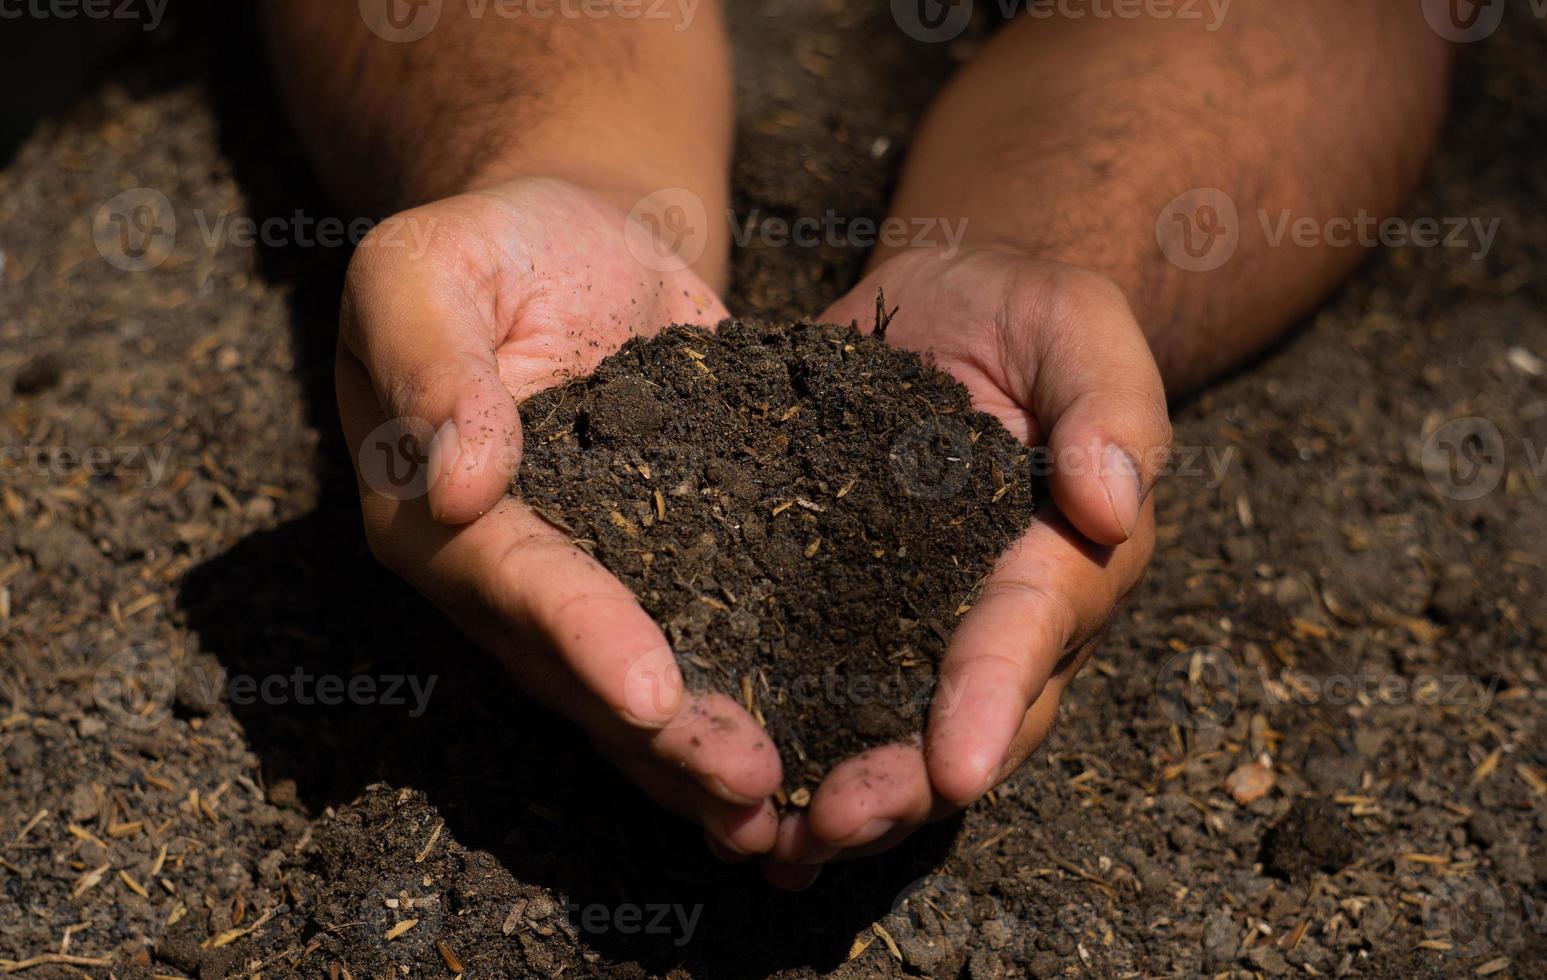 mãos seguram o solo com sementes de plantas. fotos da natureza para o meio ambiente e agricultores